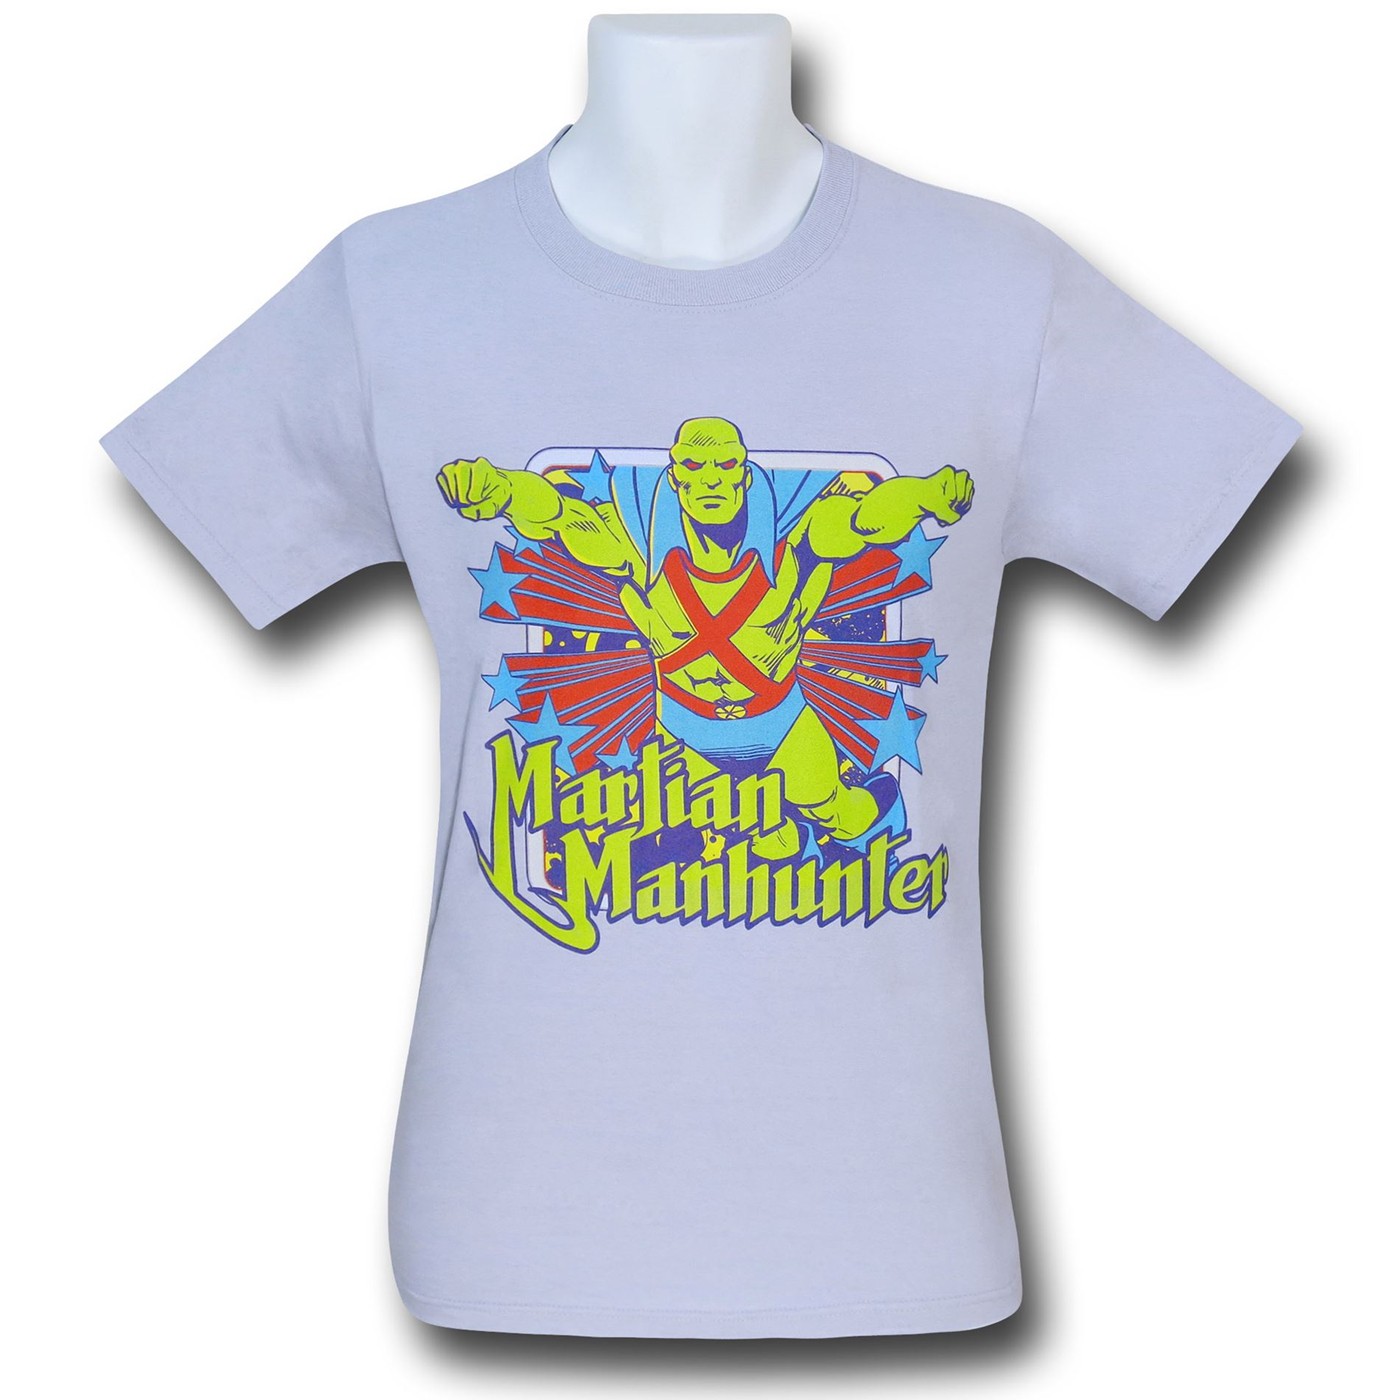 Martian Manhunter Stars Silver T-Shirt